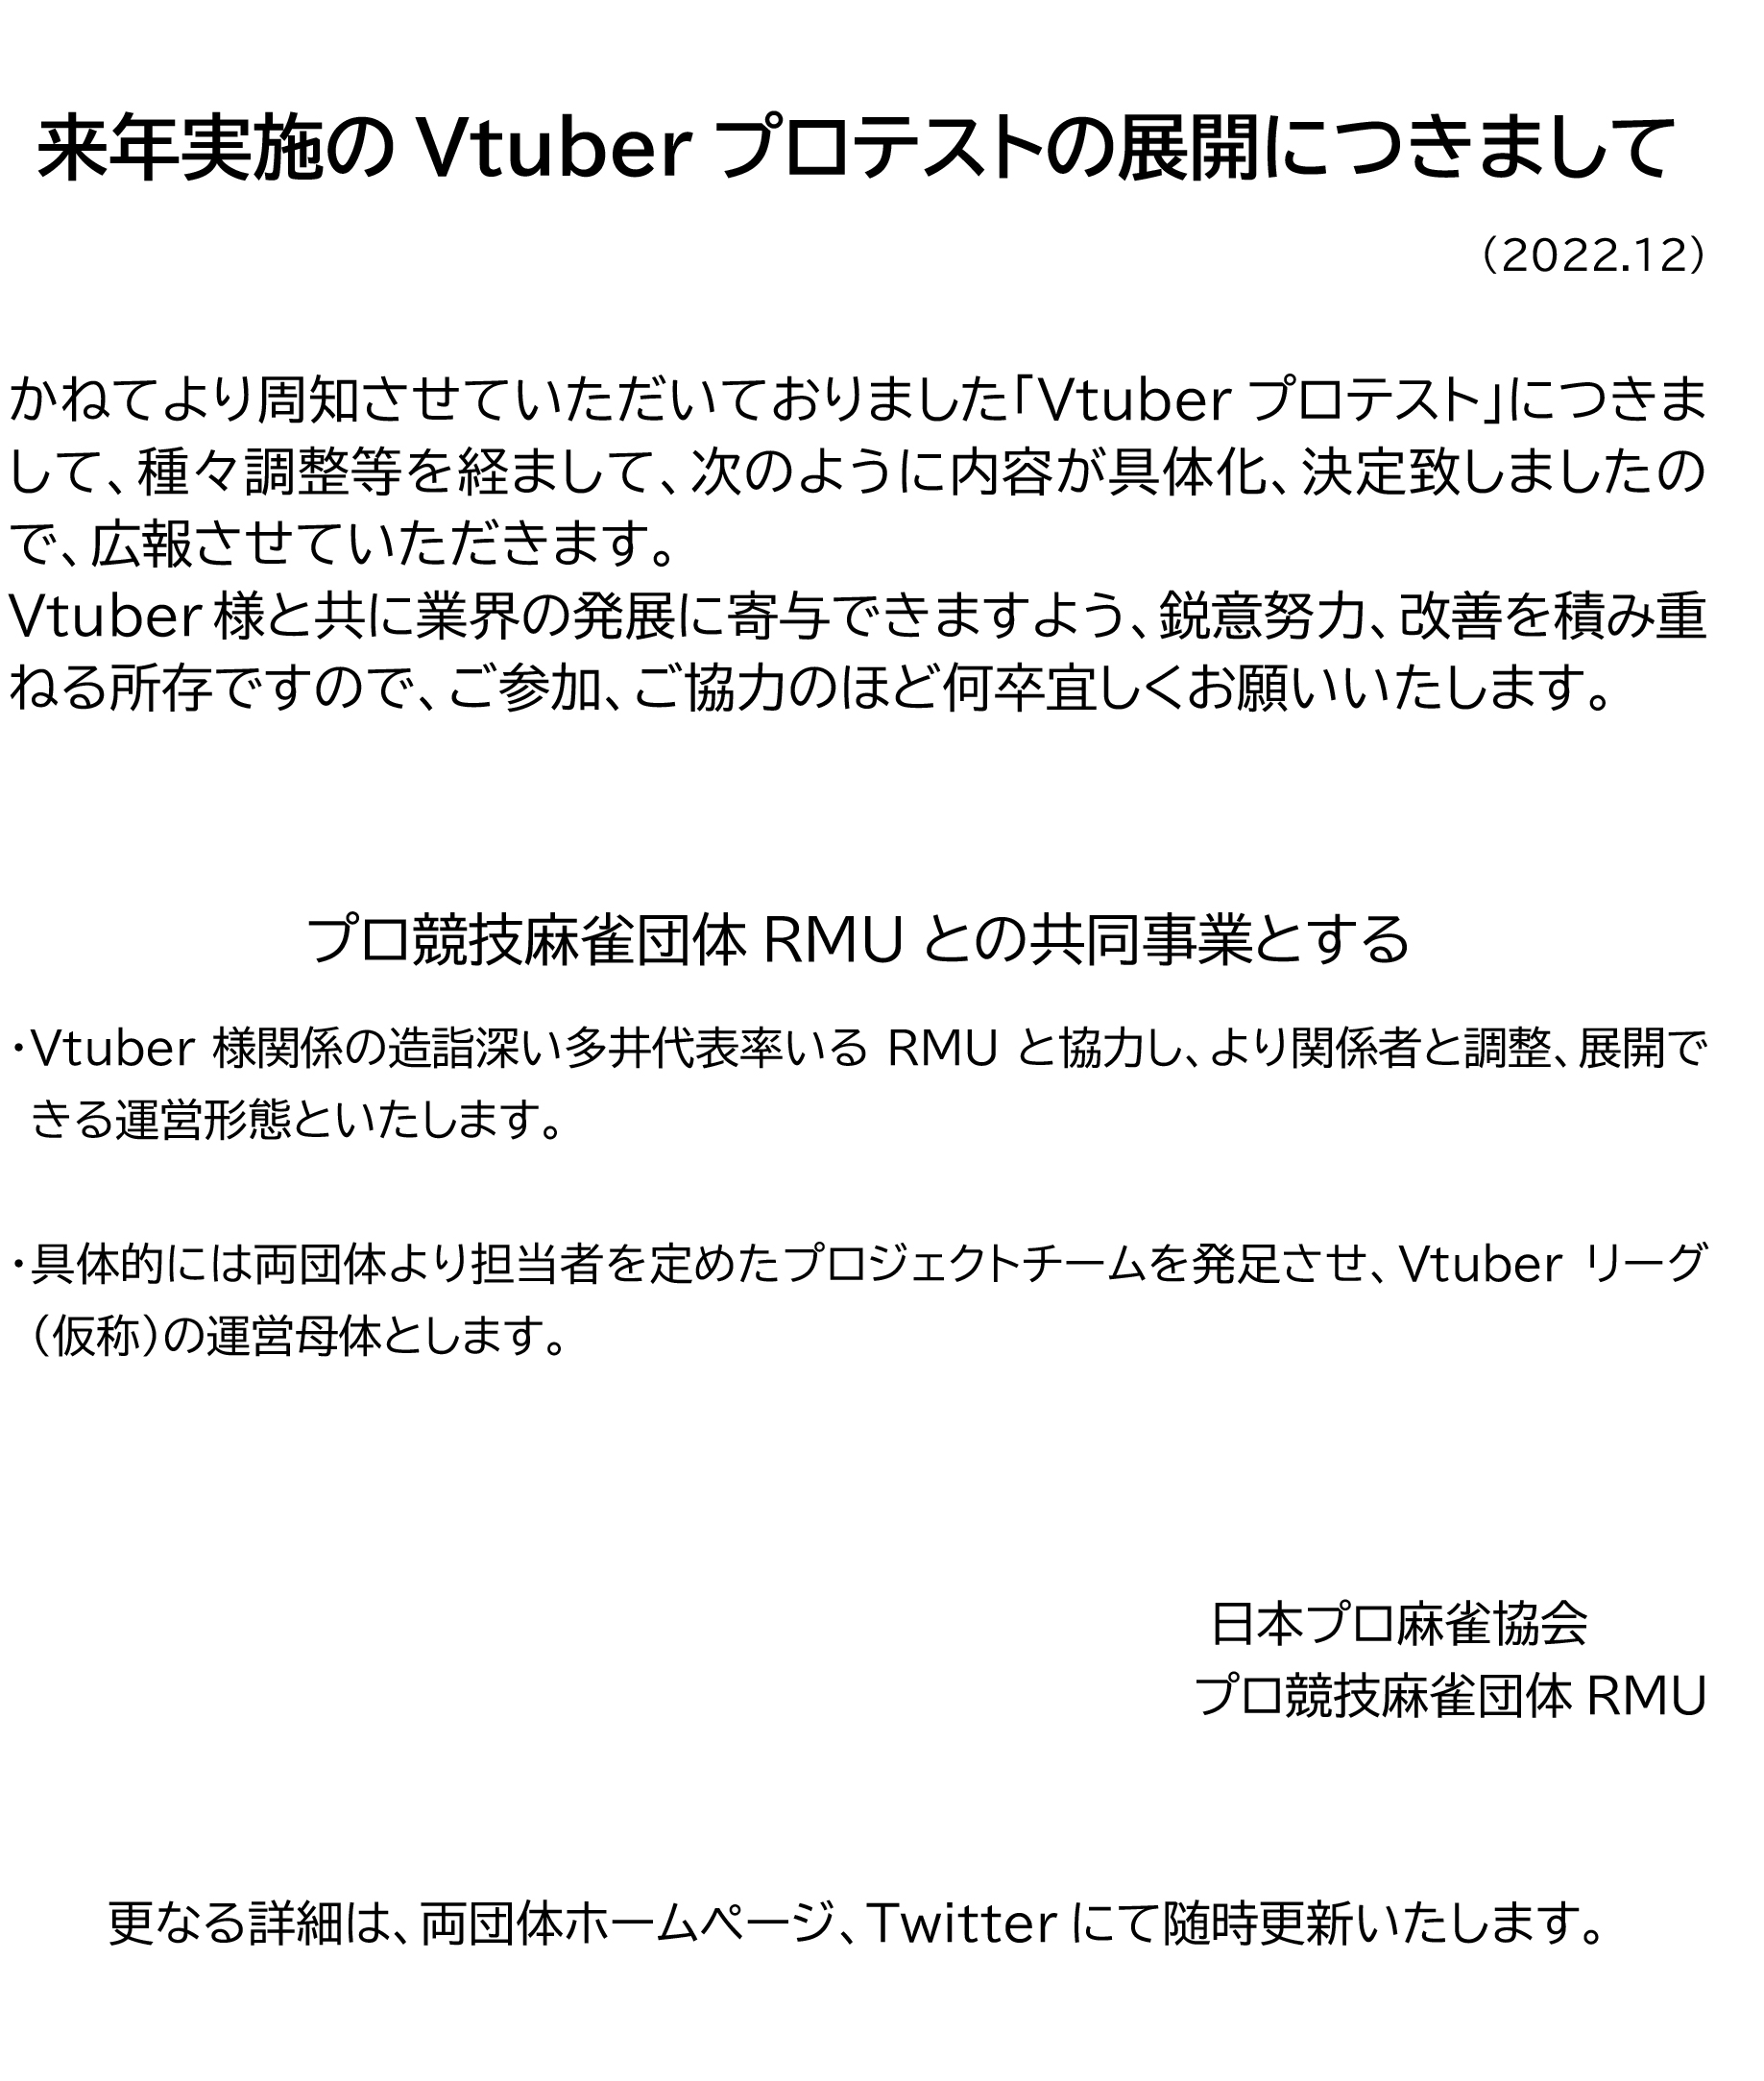 日本プロ麻雀協会 Vtuber限定プロテスト詳細